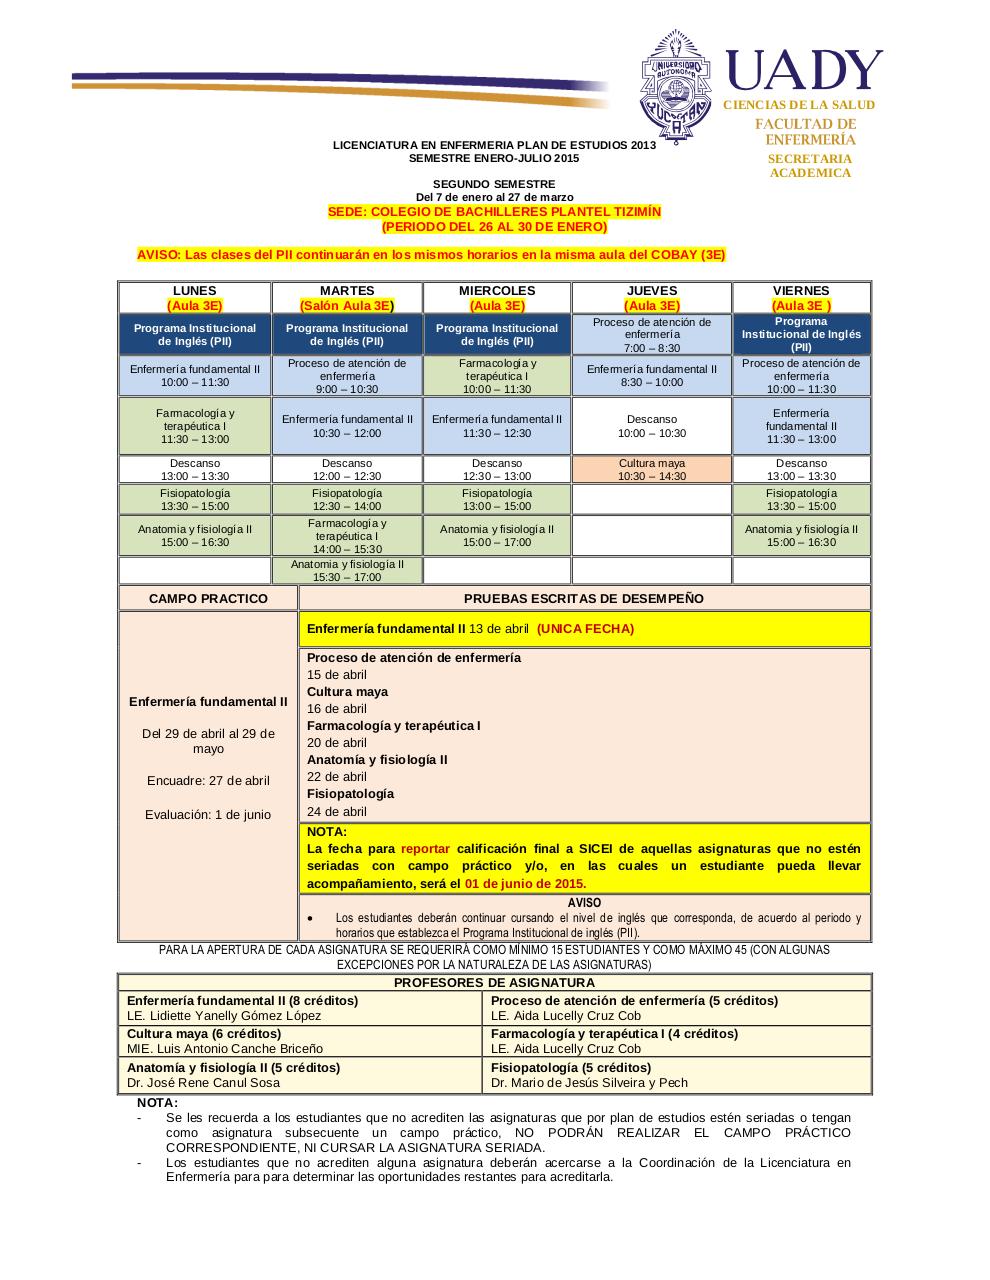 EnfermeriaHorarios 2015 Periodo del 26 al 30 de enero 2015.pdf - página 1/4